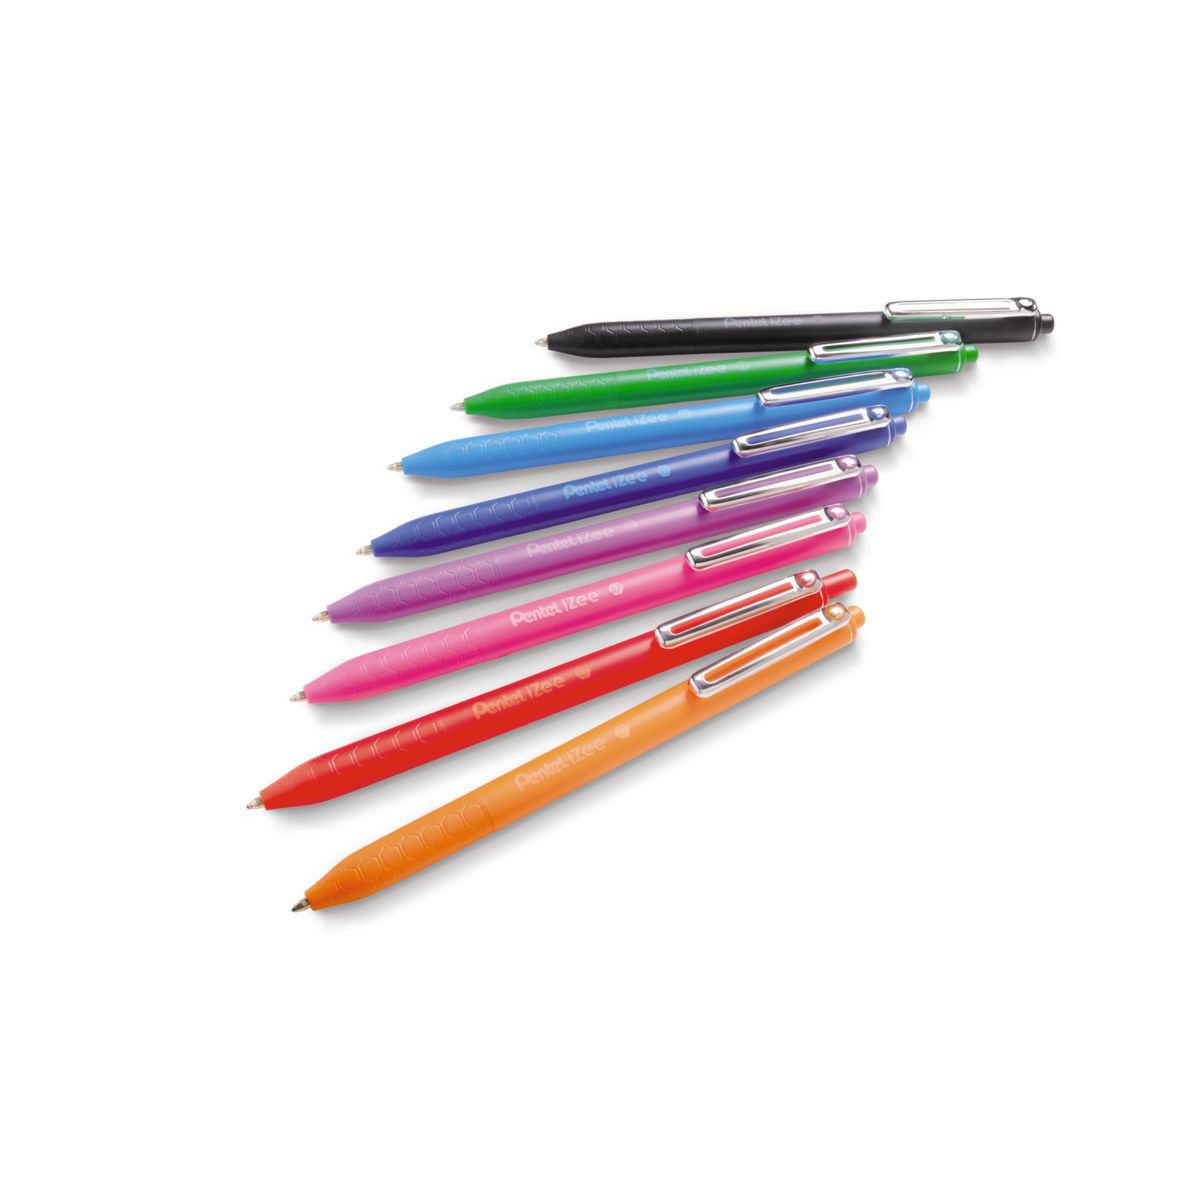 Długopis Pentel iZee fioletowy 0,7mm (BX467)